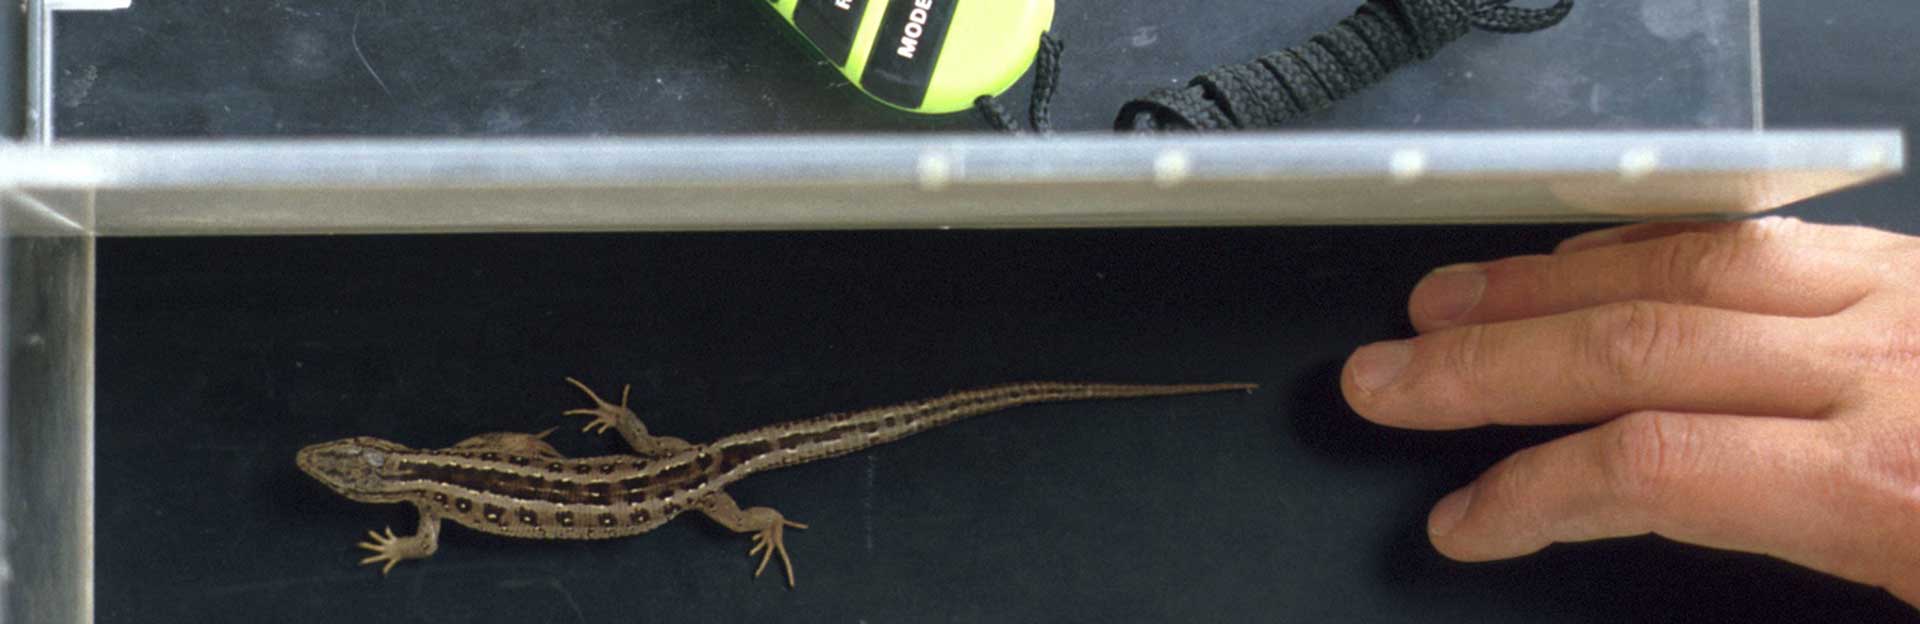 Lacerta Lizard on Treadmill